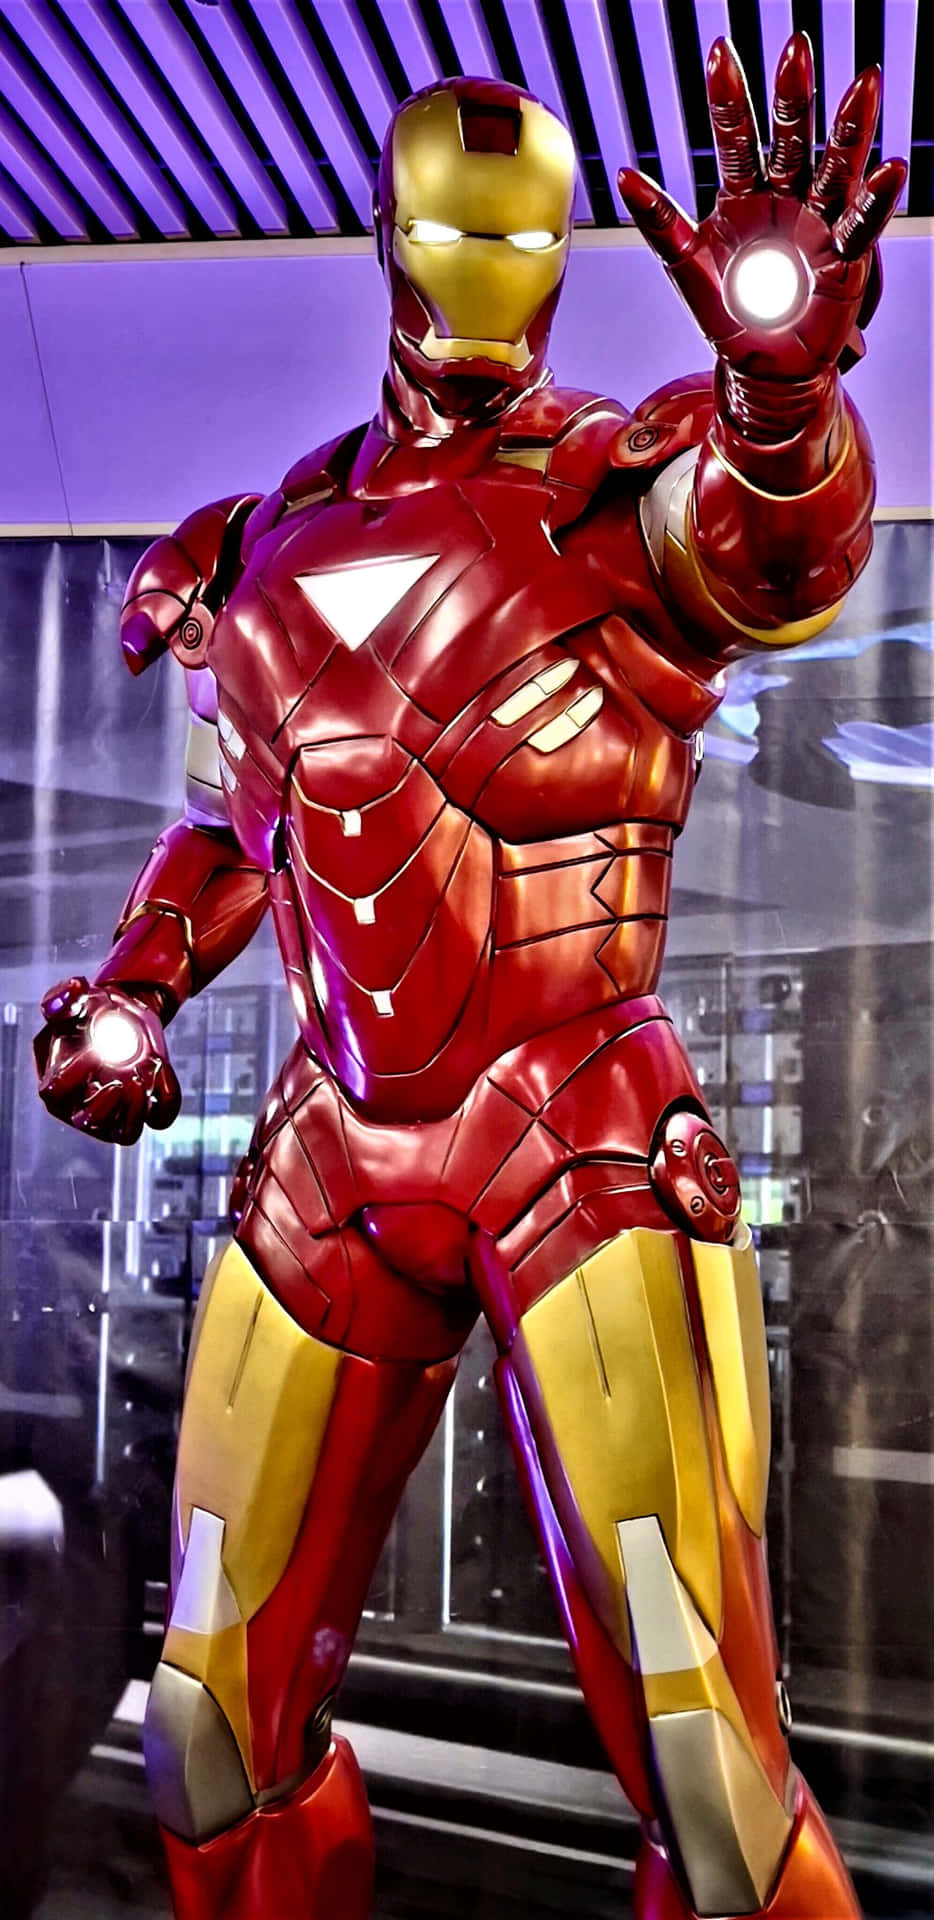 Pixel3xl Hintergrundbild: Iron Man In Seinem Labor